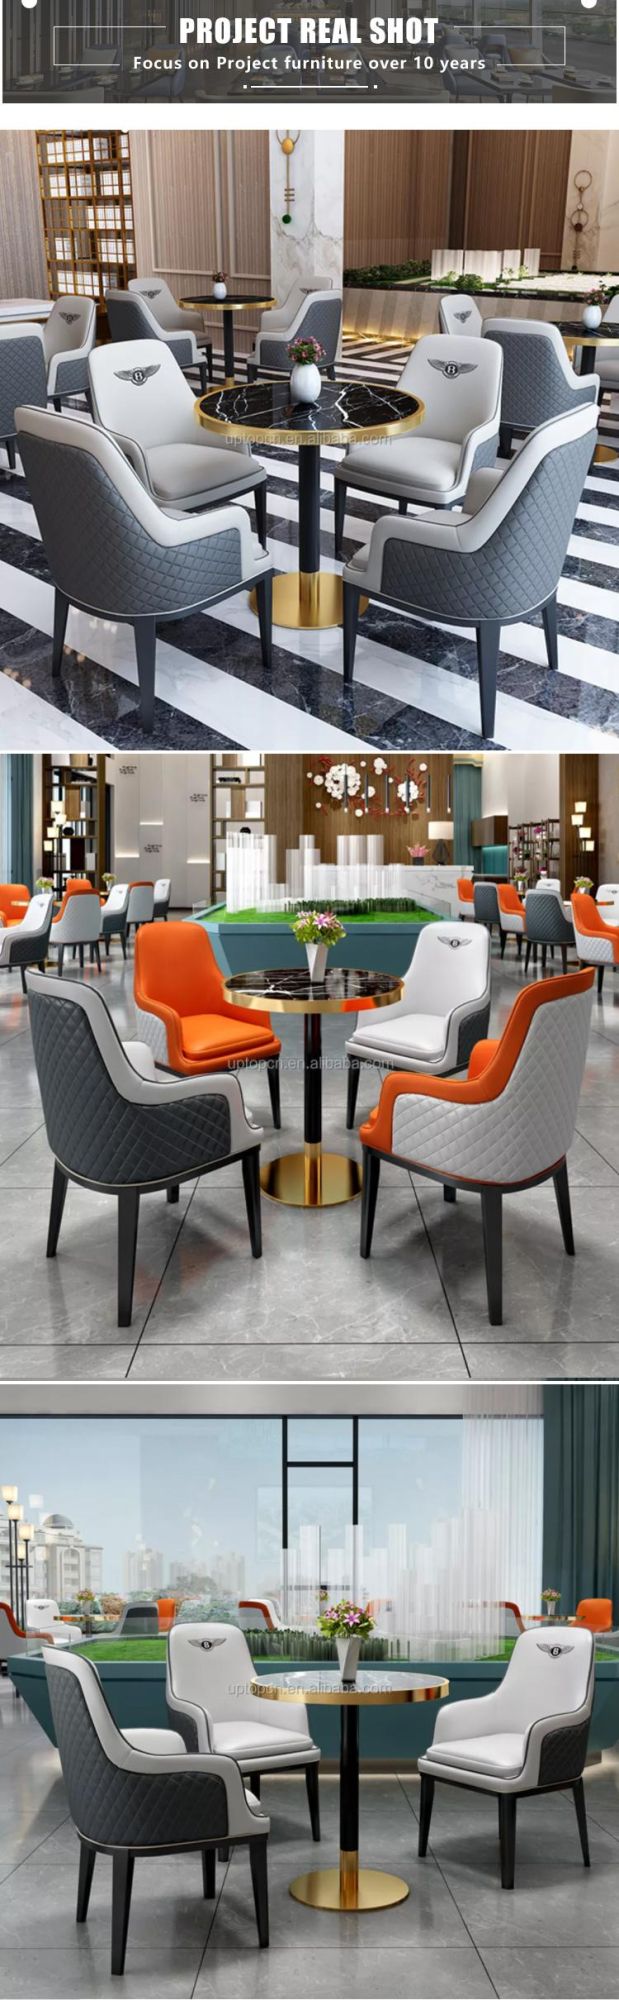 Contemporary Hotel Furniture Living Room Sofa (SP-KS112)